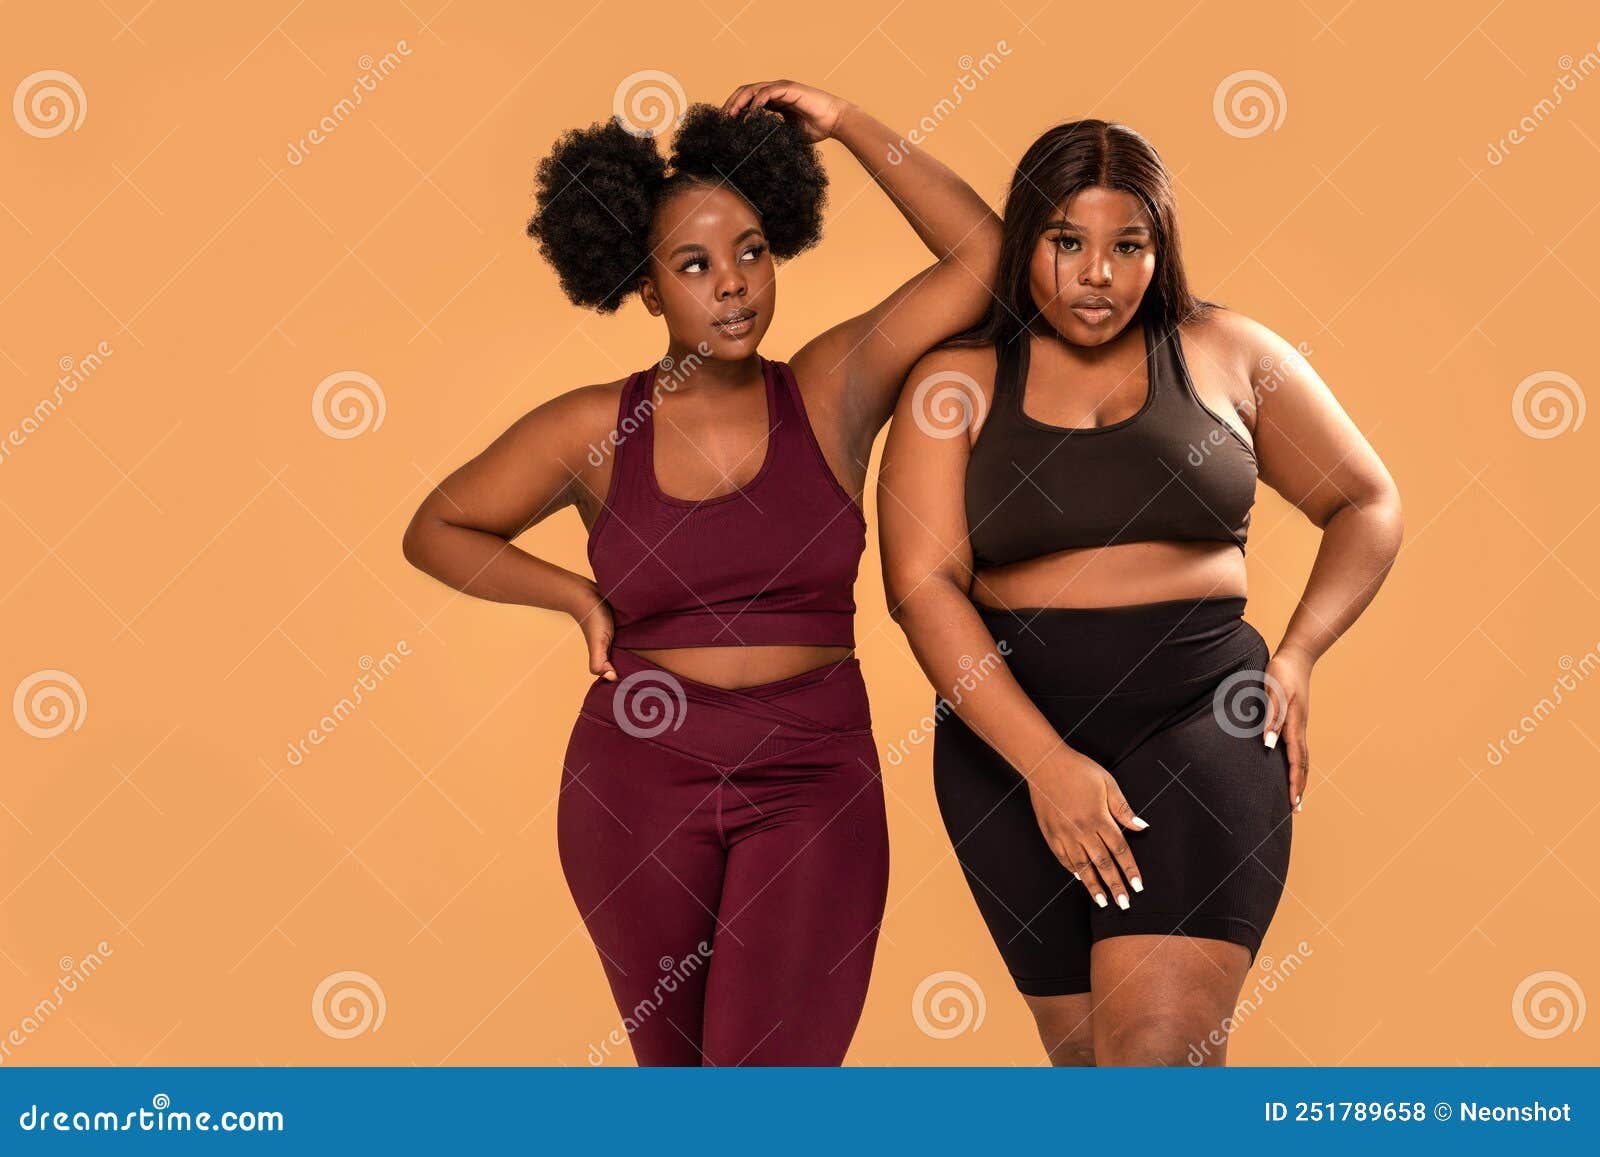 https://thumbs.dreamstime.com/z/dos-amigas-posando-con-ropa-deportiva-de-moda-despu%C3%A9s-del-entrenamiento-mujeres-africanas-m%C3%A1s-tama%C3%B1o-concepto-positivo-cuerpo-251789658.jpg